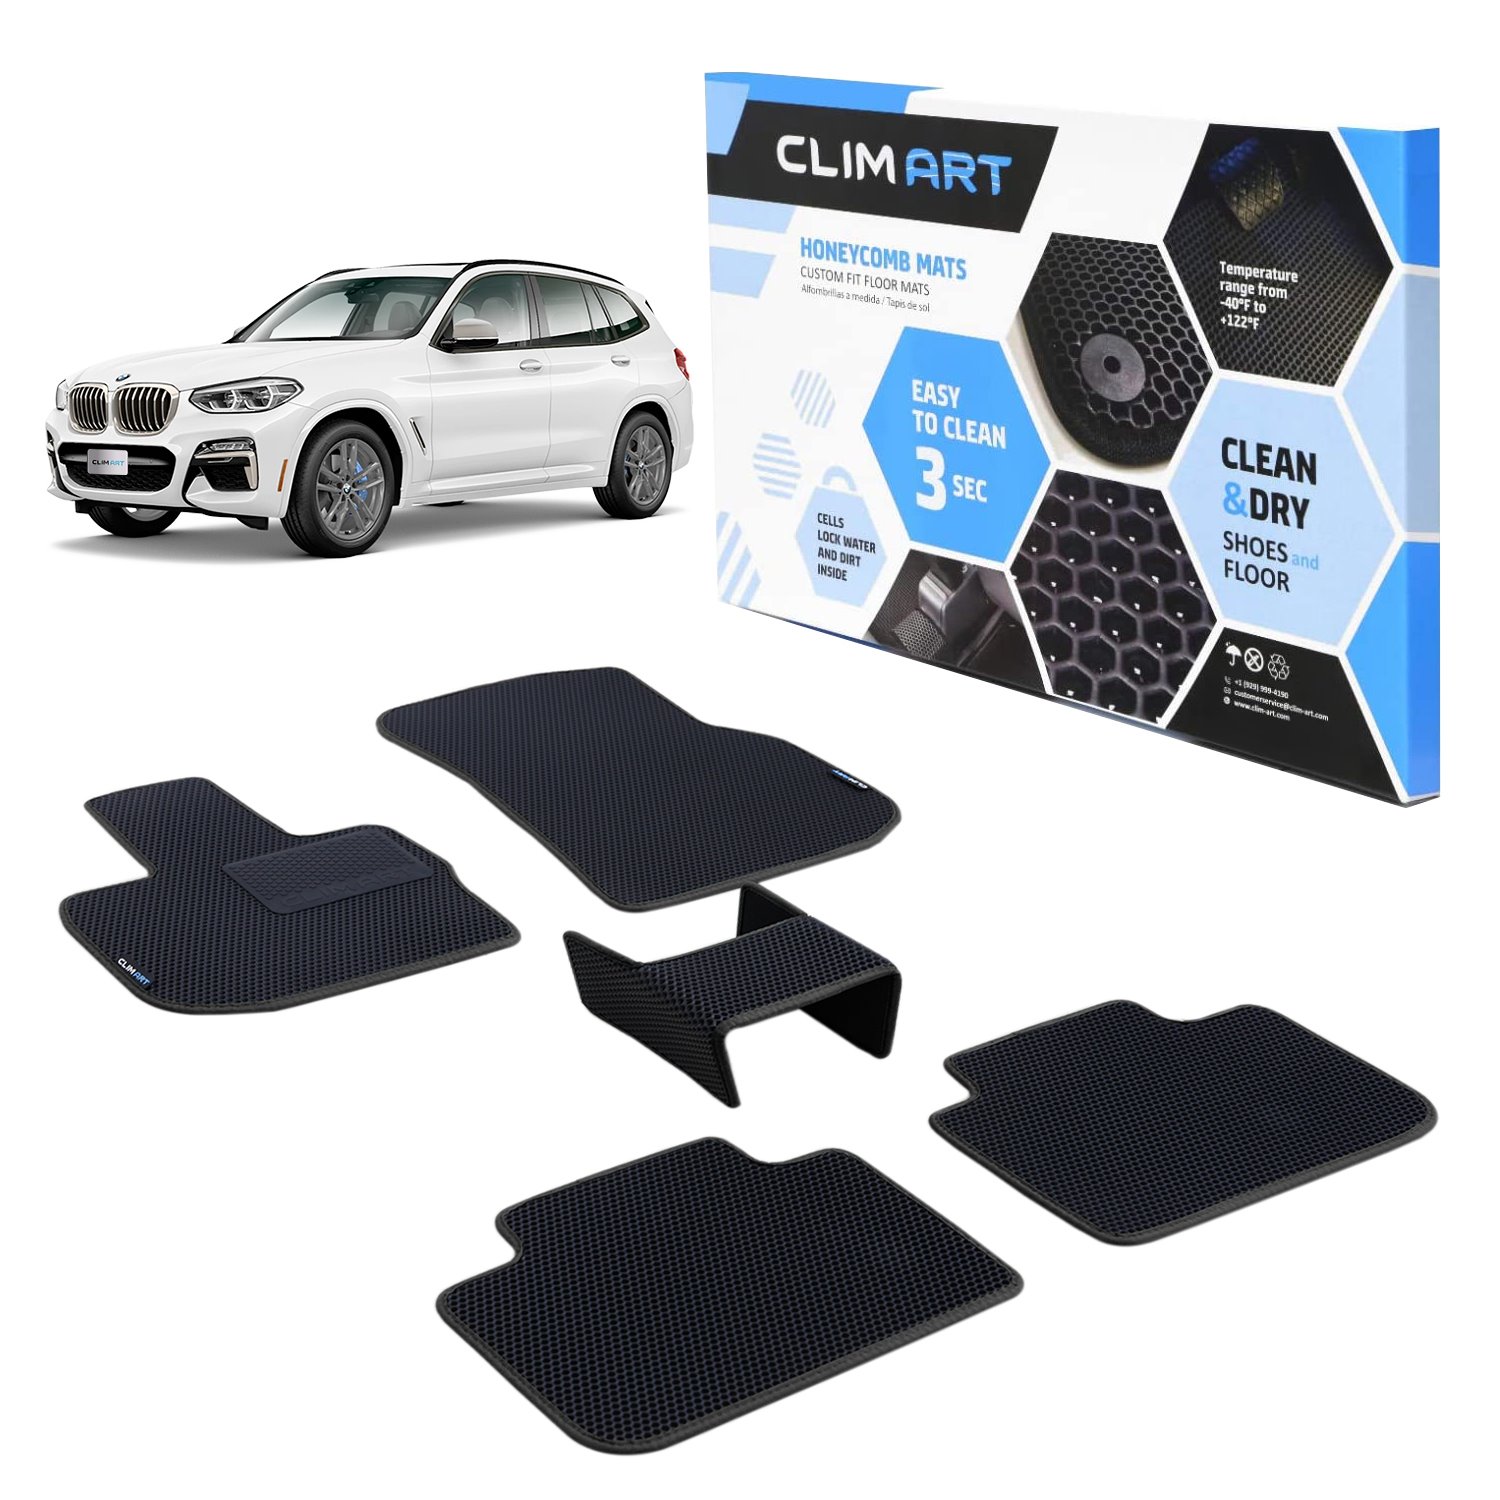 CLIM ART Honeycomb Custom Fit Floor Mats Fits Select BMW X3/BMW X4